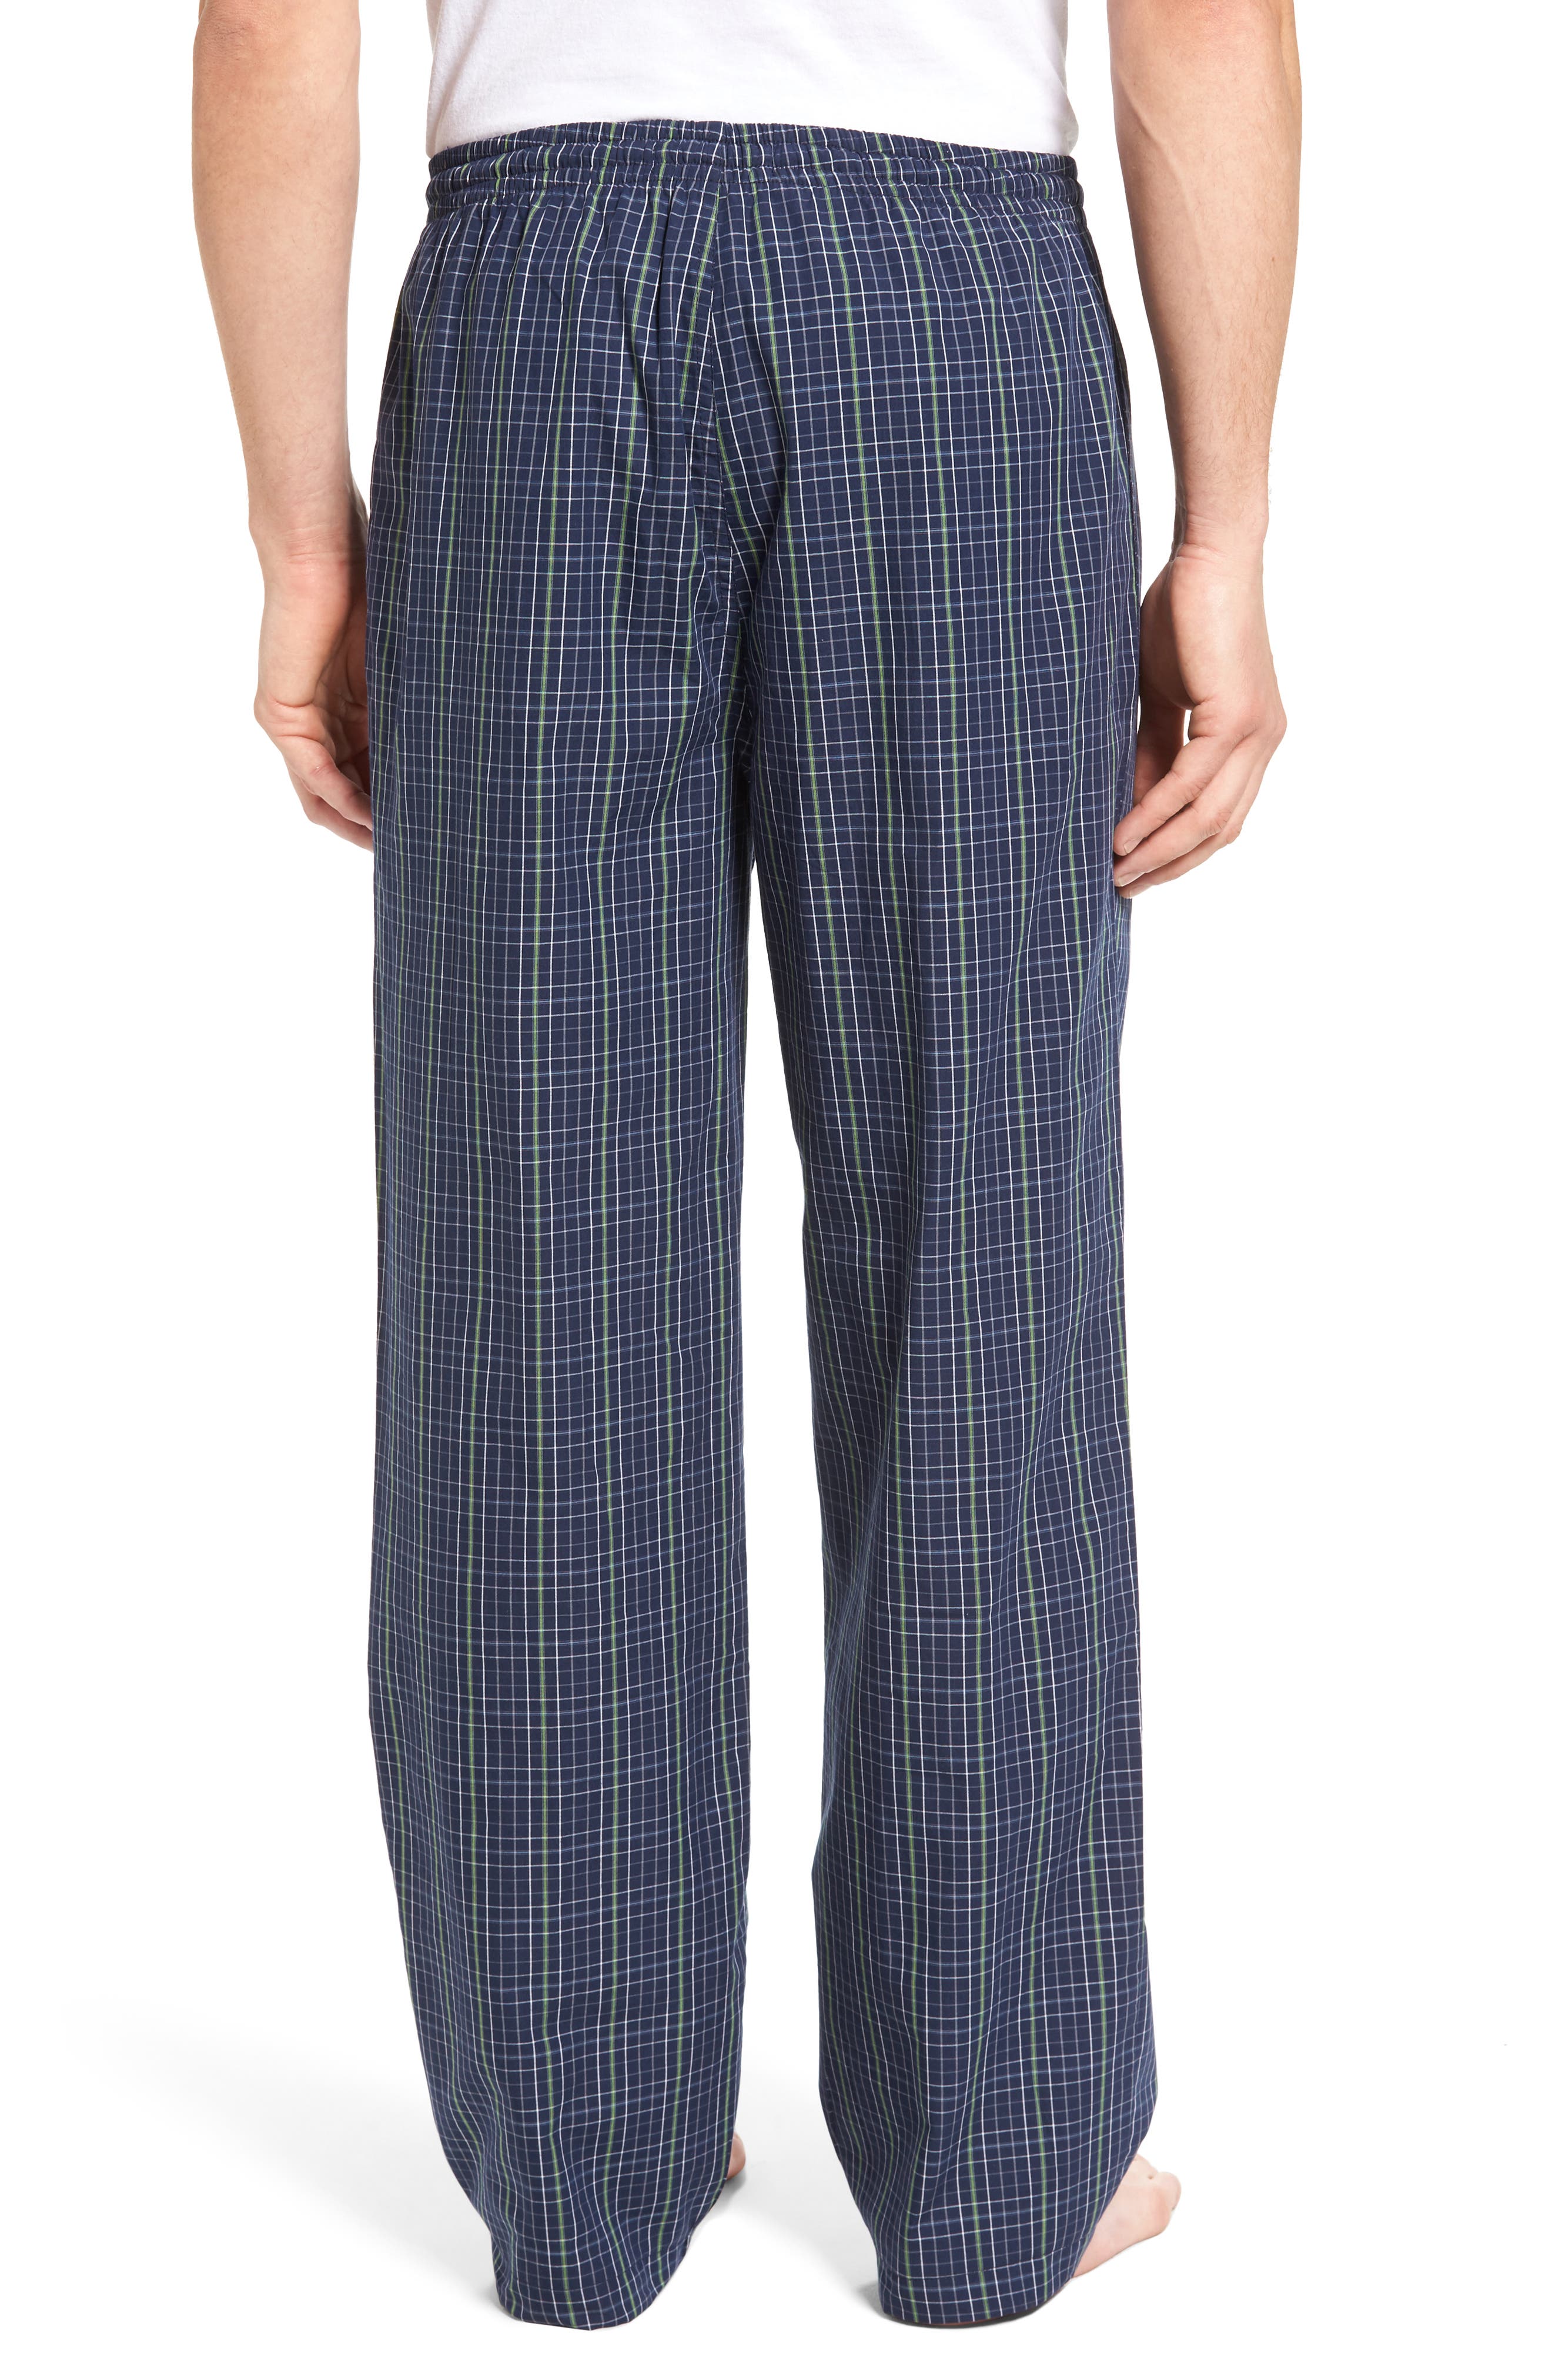 NORDSTROM MEN'S SHOP | Poplin Pajama Pants | Nordstrom Rack